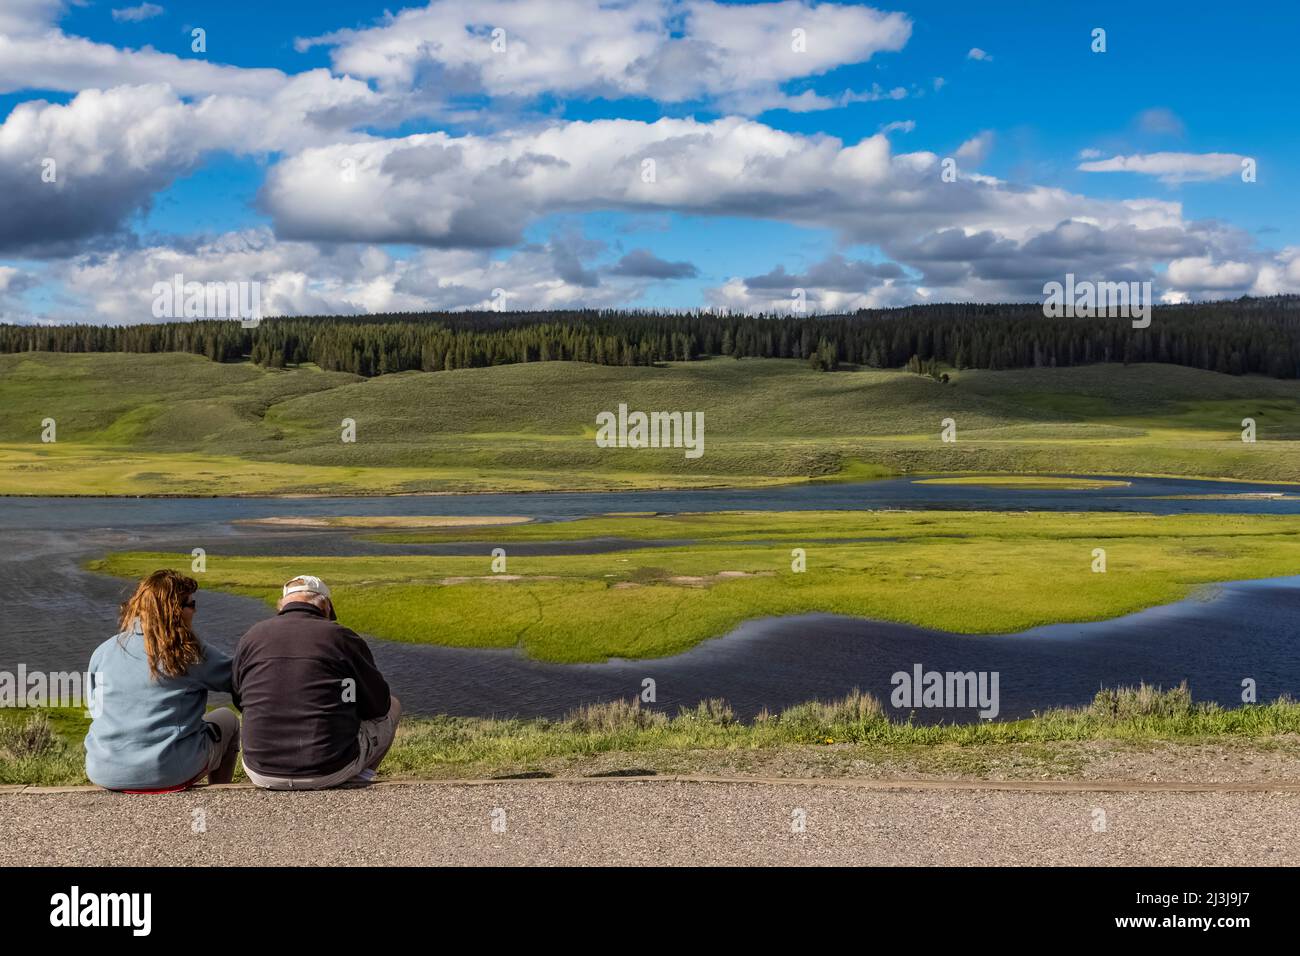 Una coppia che guarda Hayden Valley, che è una casa adatta per Buffalo nel Parco Nazionale di Yellowstone, USA [No model releases; editorial licensing only] Foto Stock